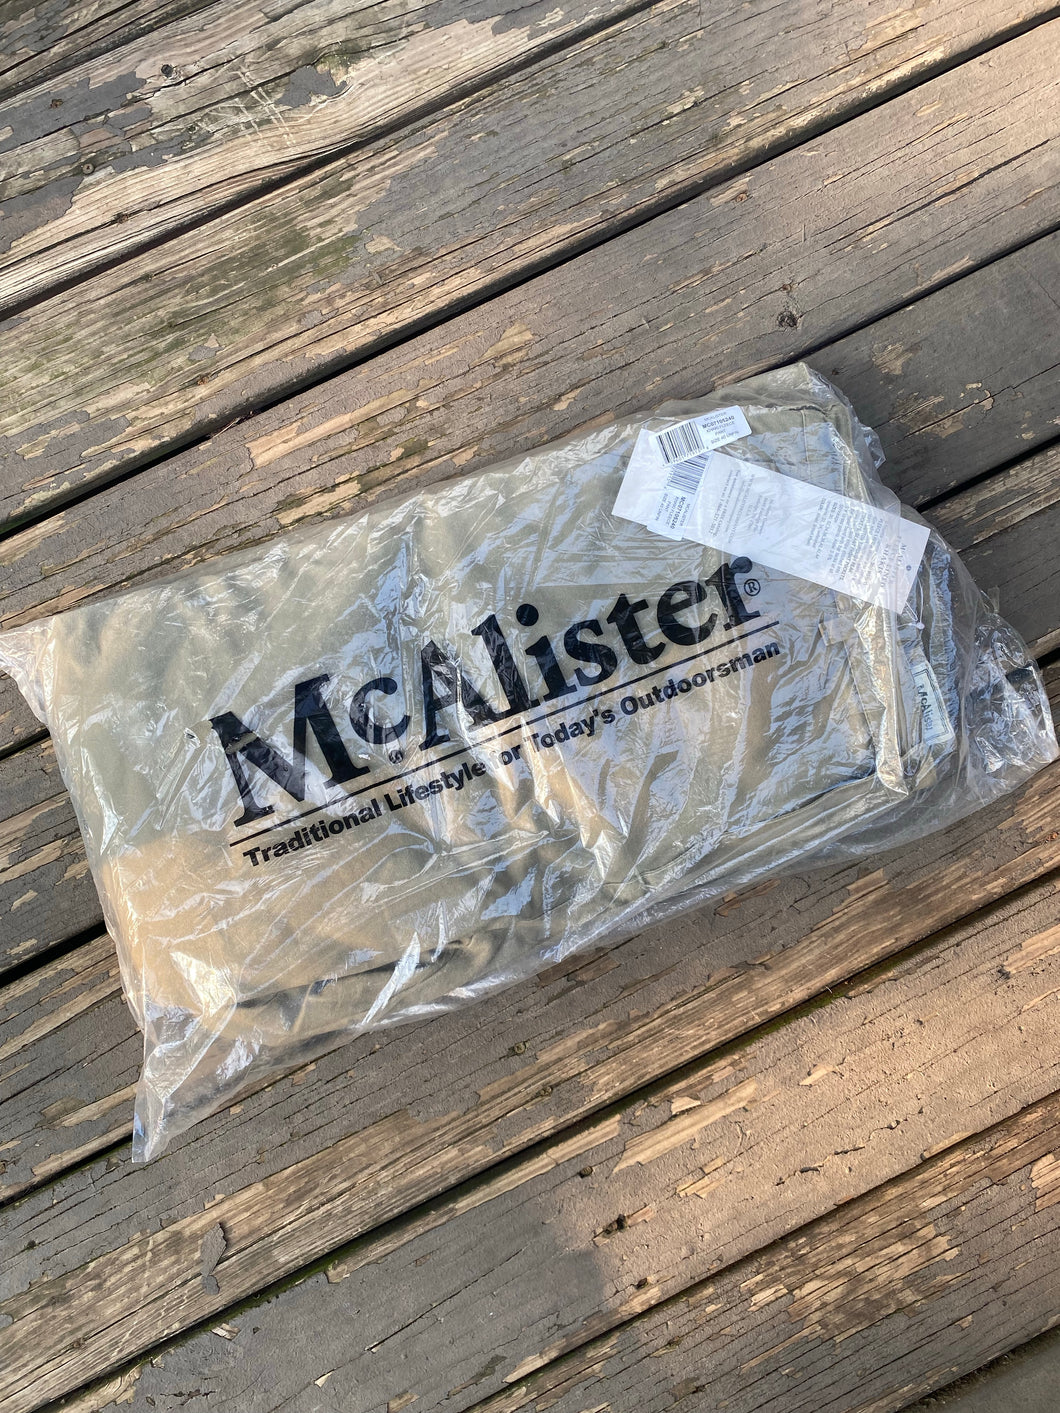 McAlister Fleece Lined Pants (40”)